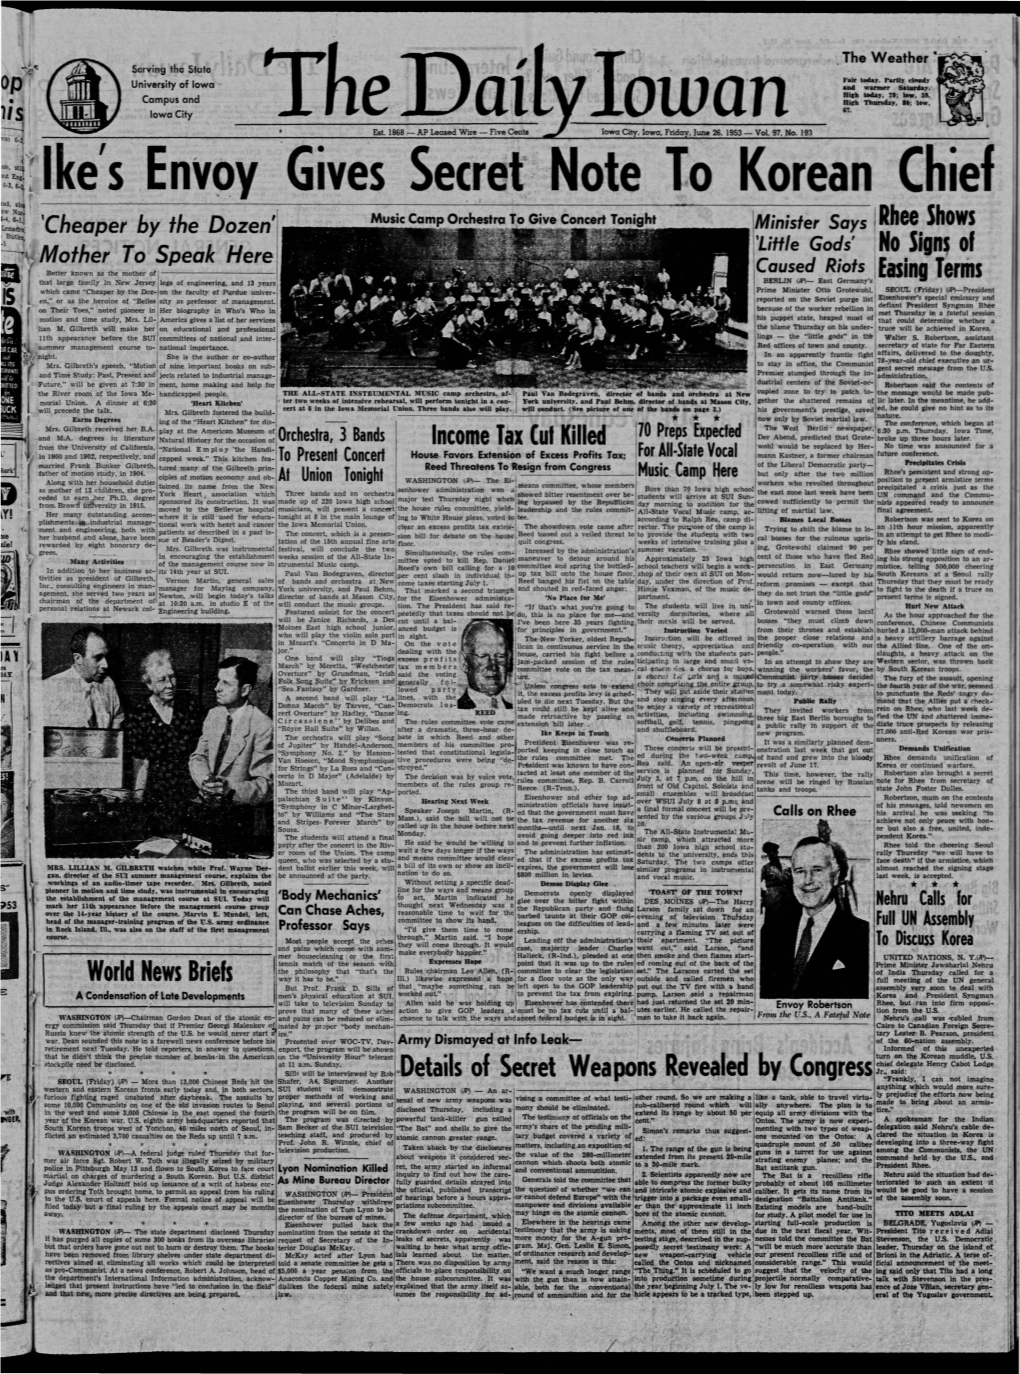 Daily Iowan (Iowa City, Iowa), 1953-06-26